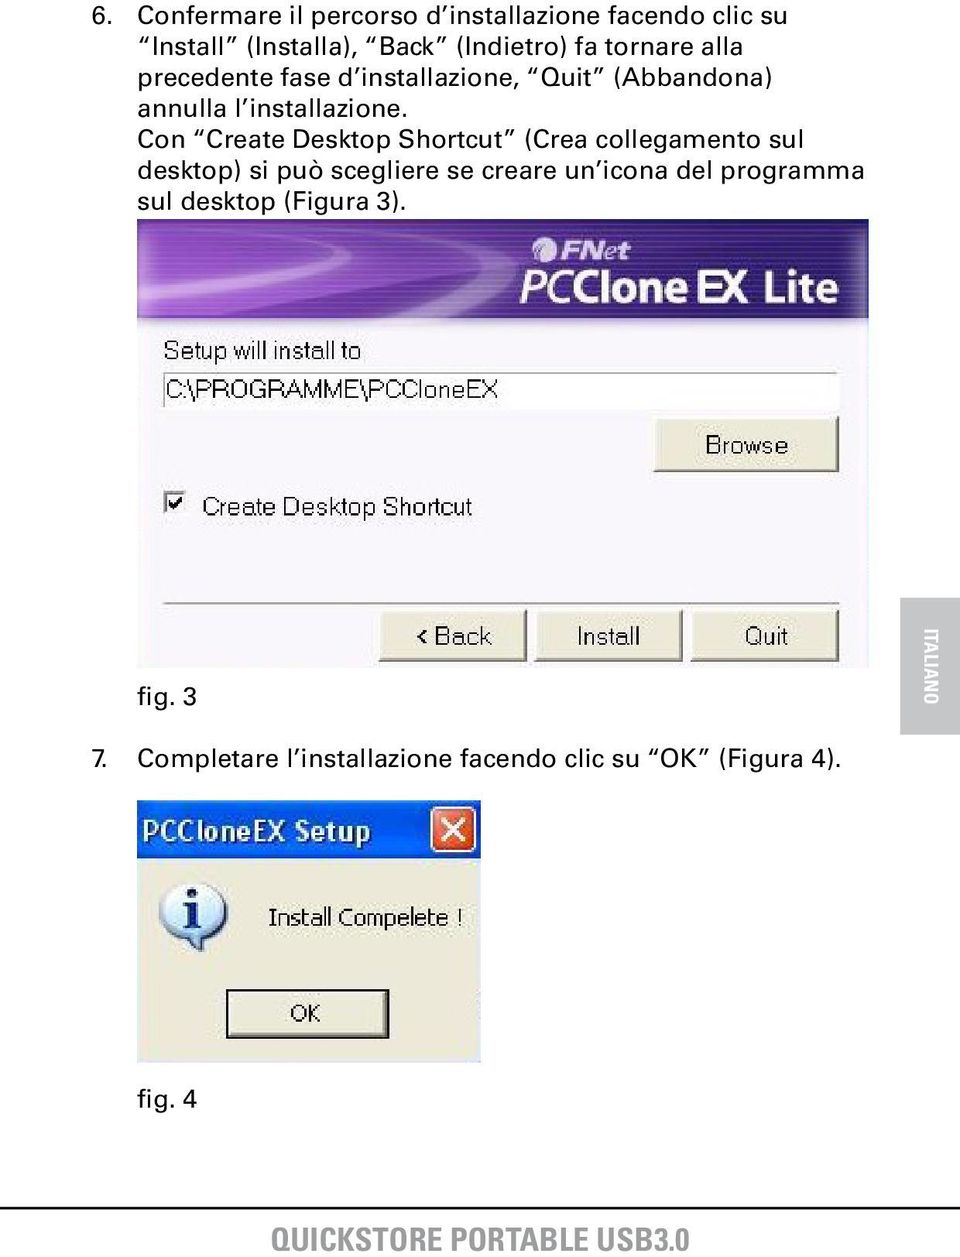 Con Create Desktop Shortcut (Crea collegamento sul desktop) si può scegliere se creare un icona